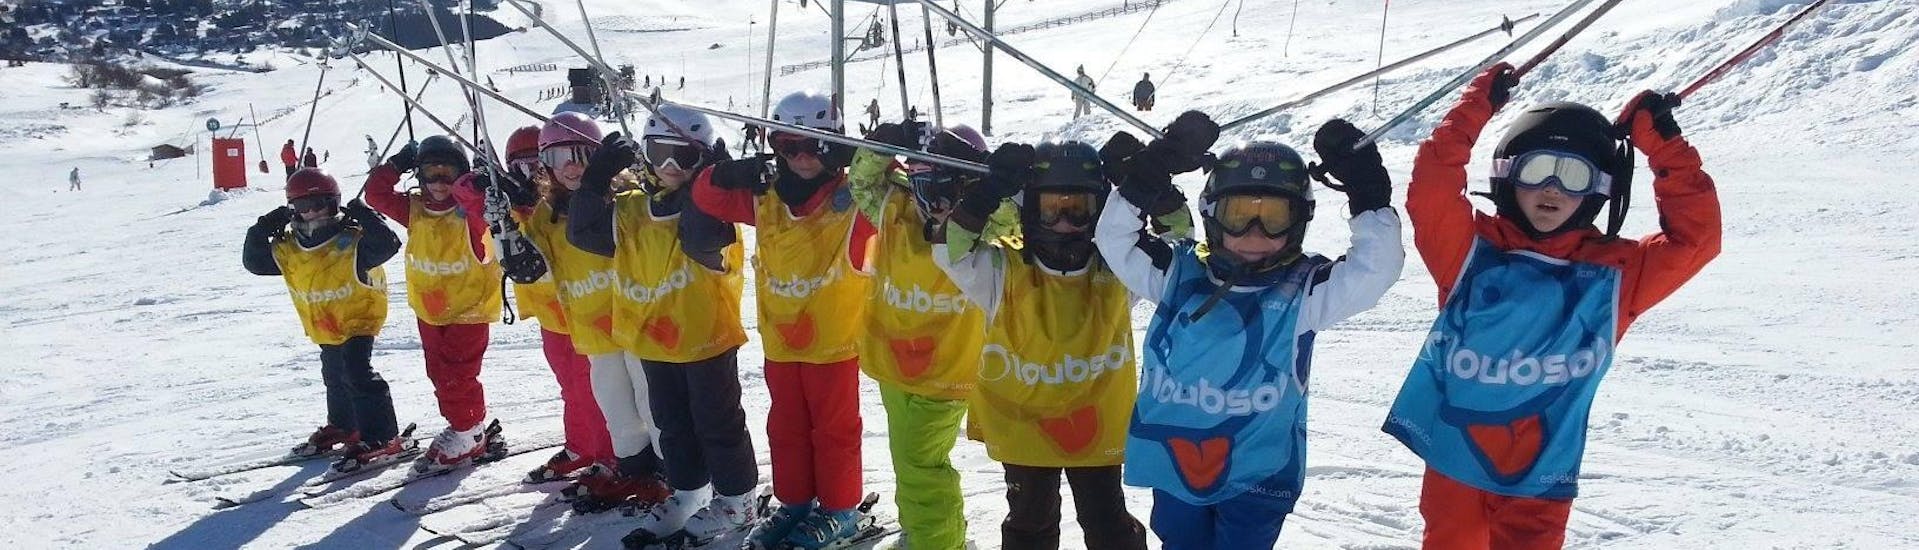 Kinder-Skikurs ab 6 Jahren ohne Erfahrung.